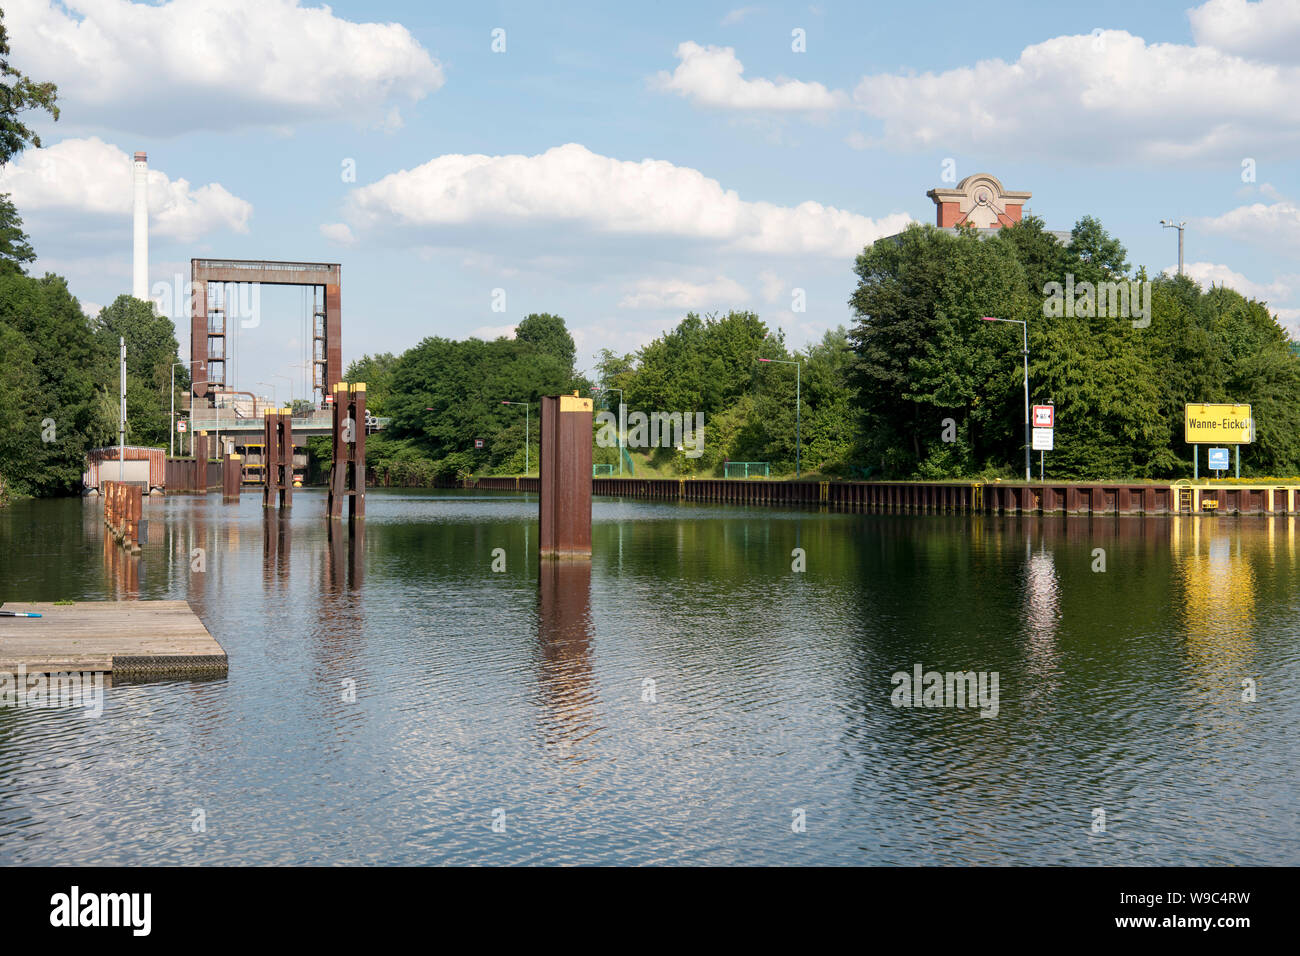 Deutschland, Ruhrgebiet, Wanne-Eickel, Schleuse Herne Crange am Rhein-Herne-Kanal, Stock Photo